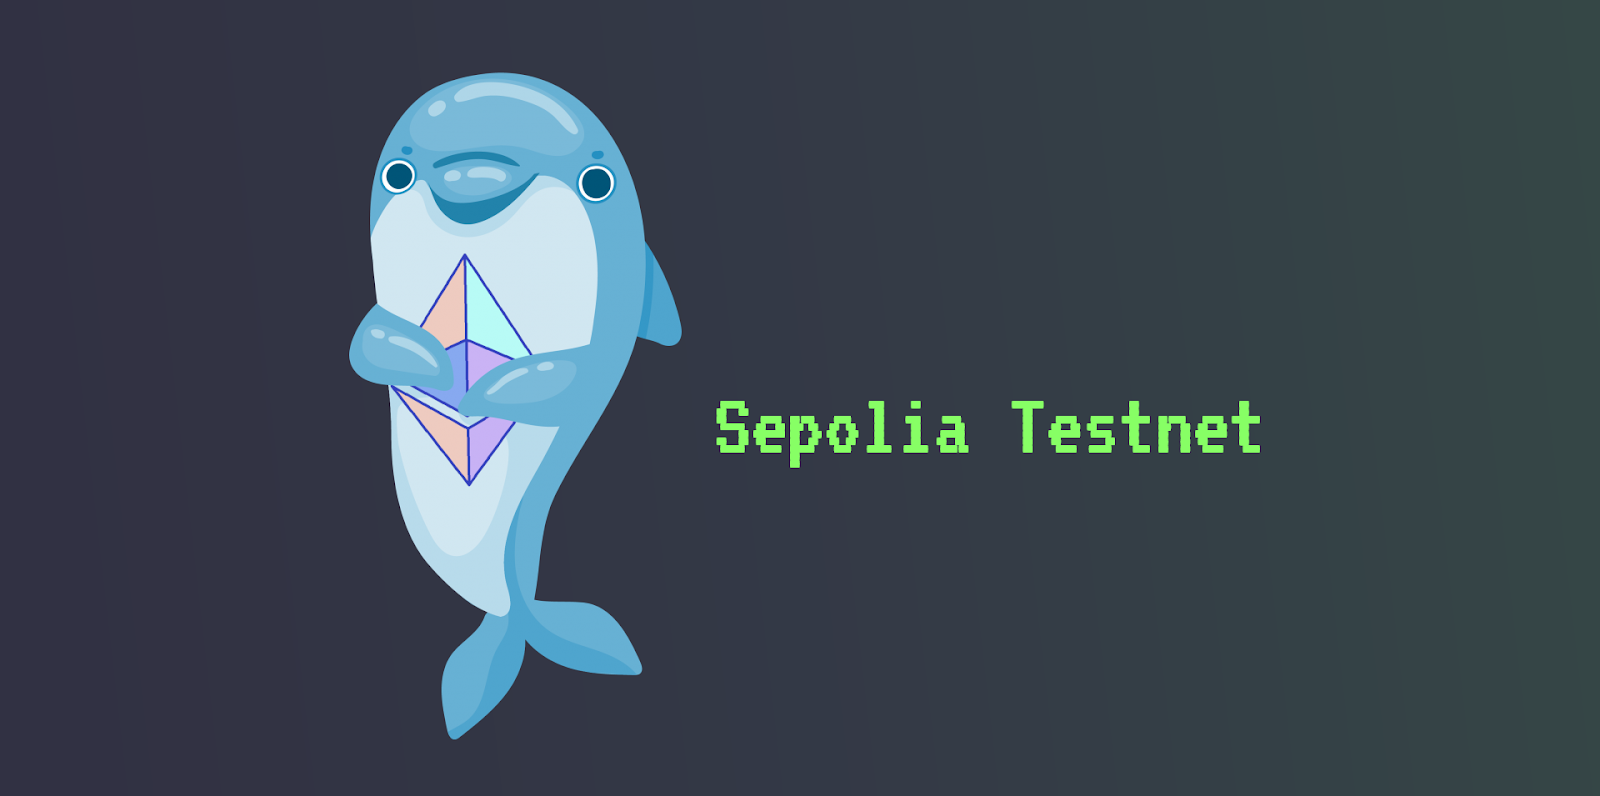 Sepolia testnet logo.